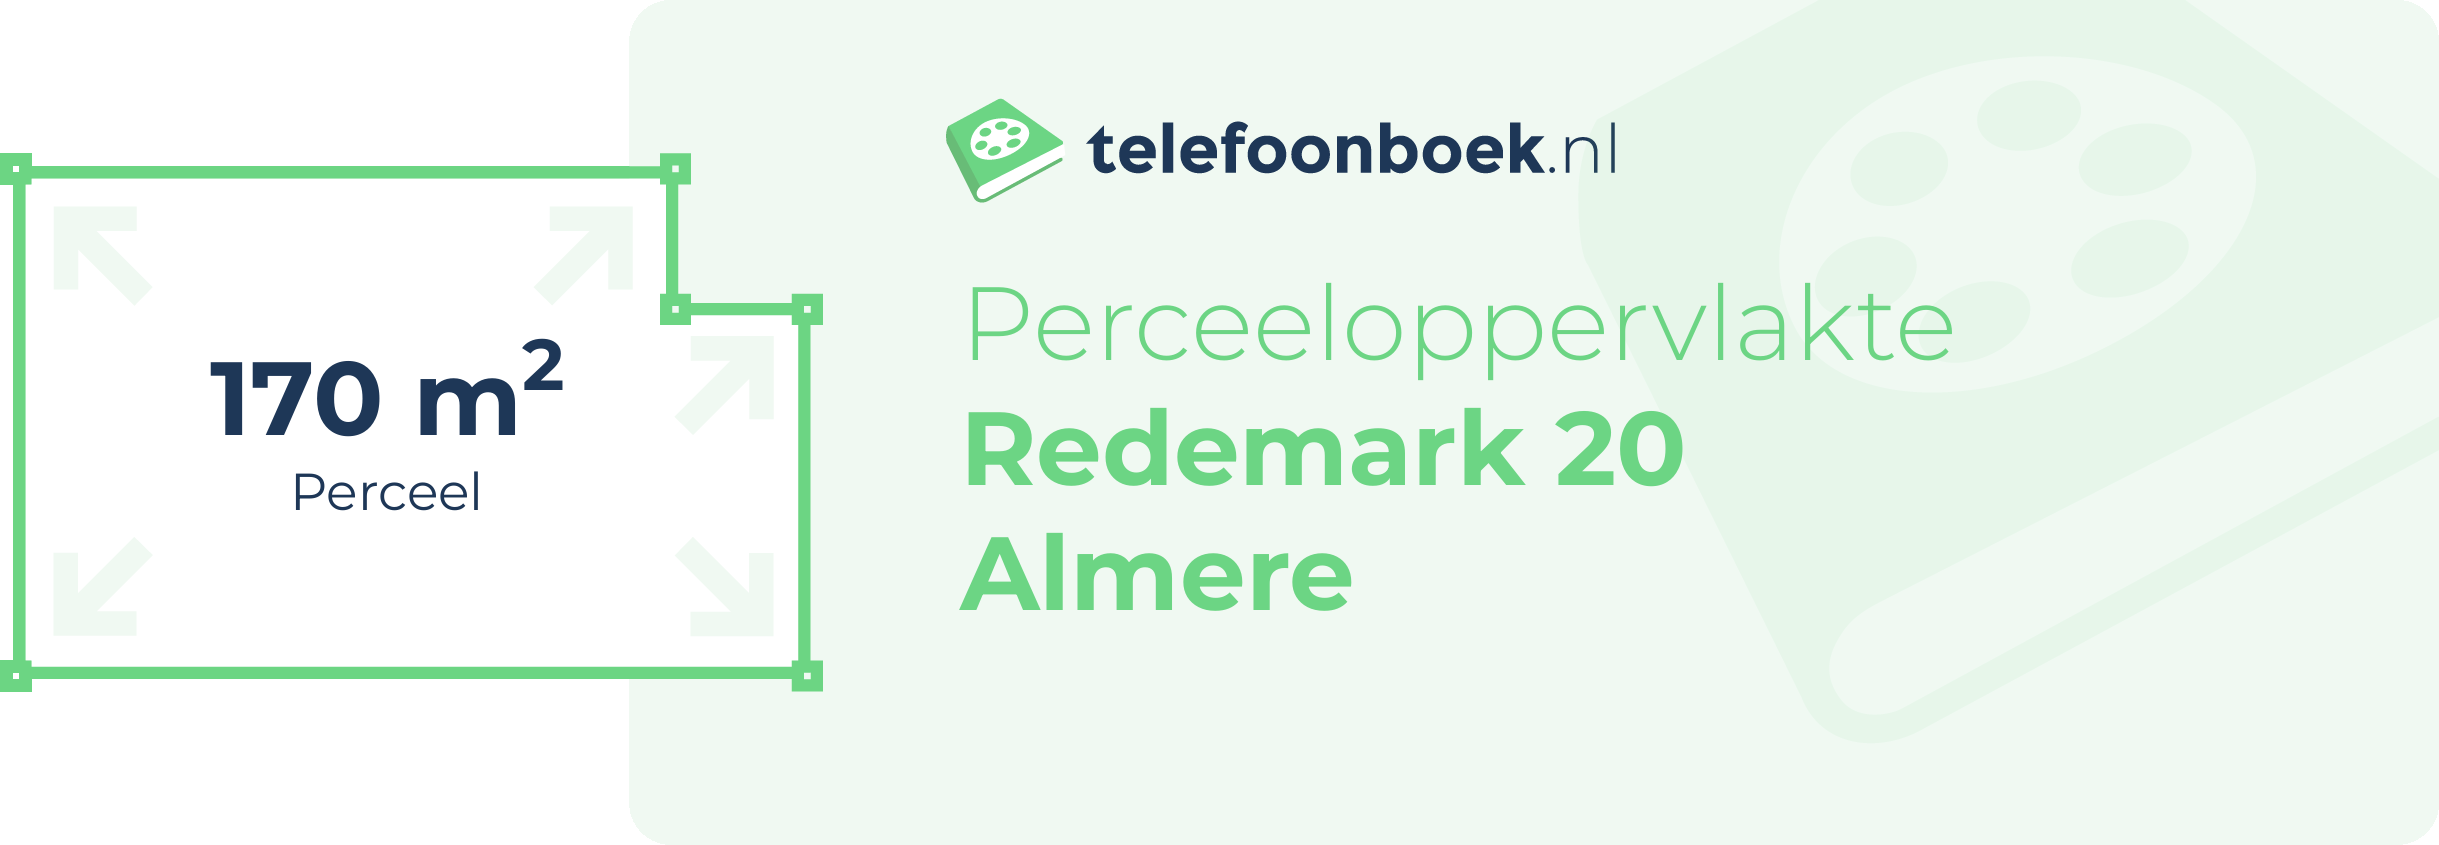 Perceeloppervlakte Redemark 20 Almere